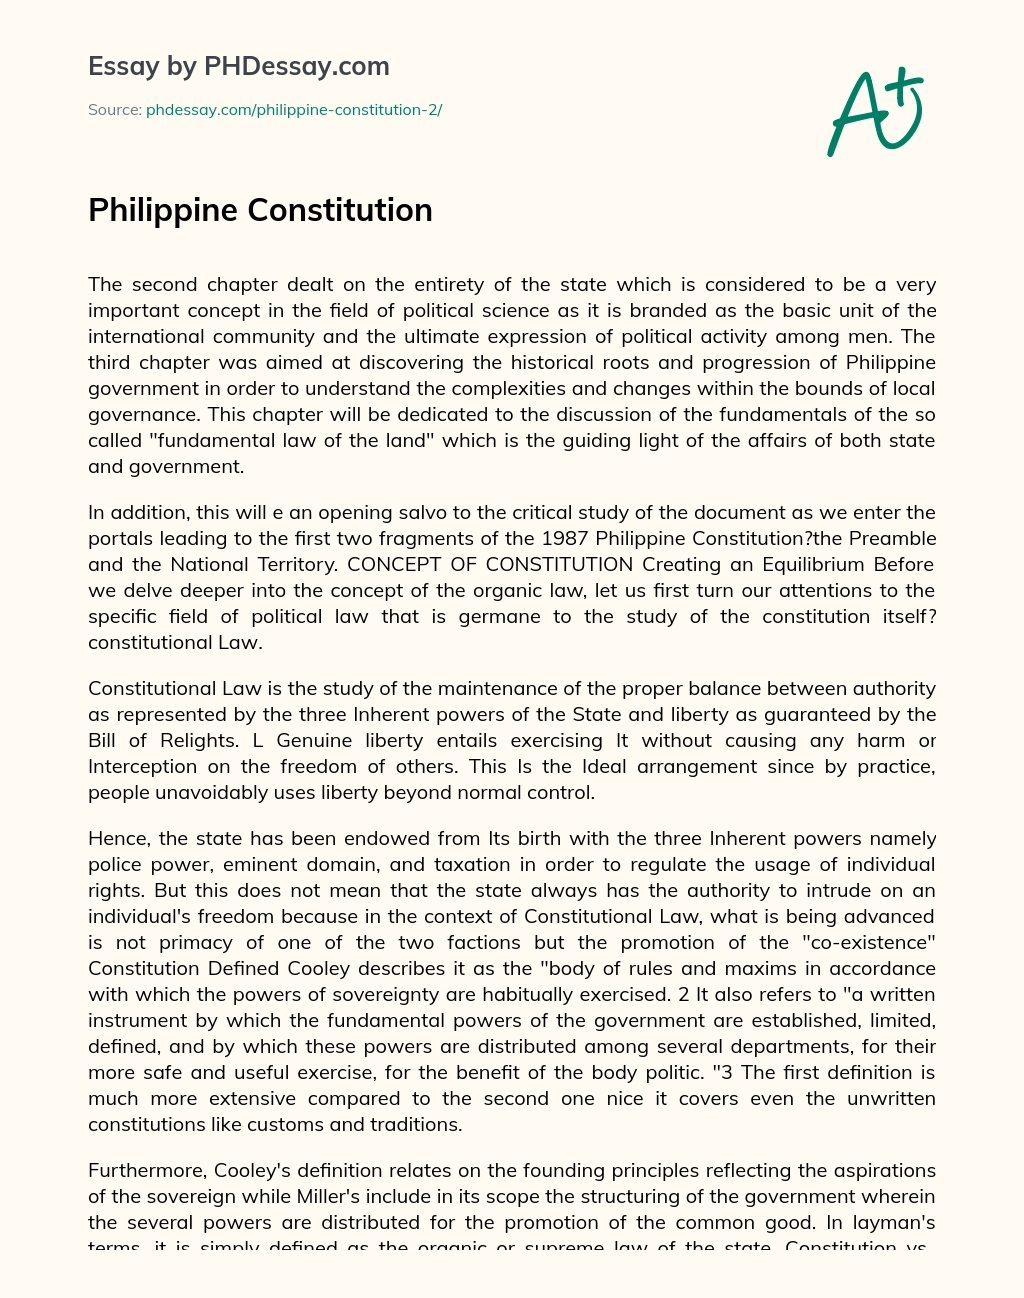 Philippine Constitution essay